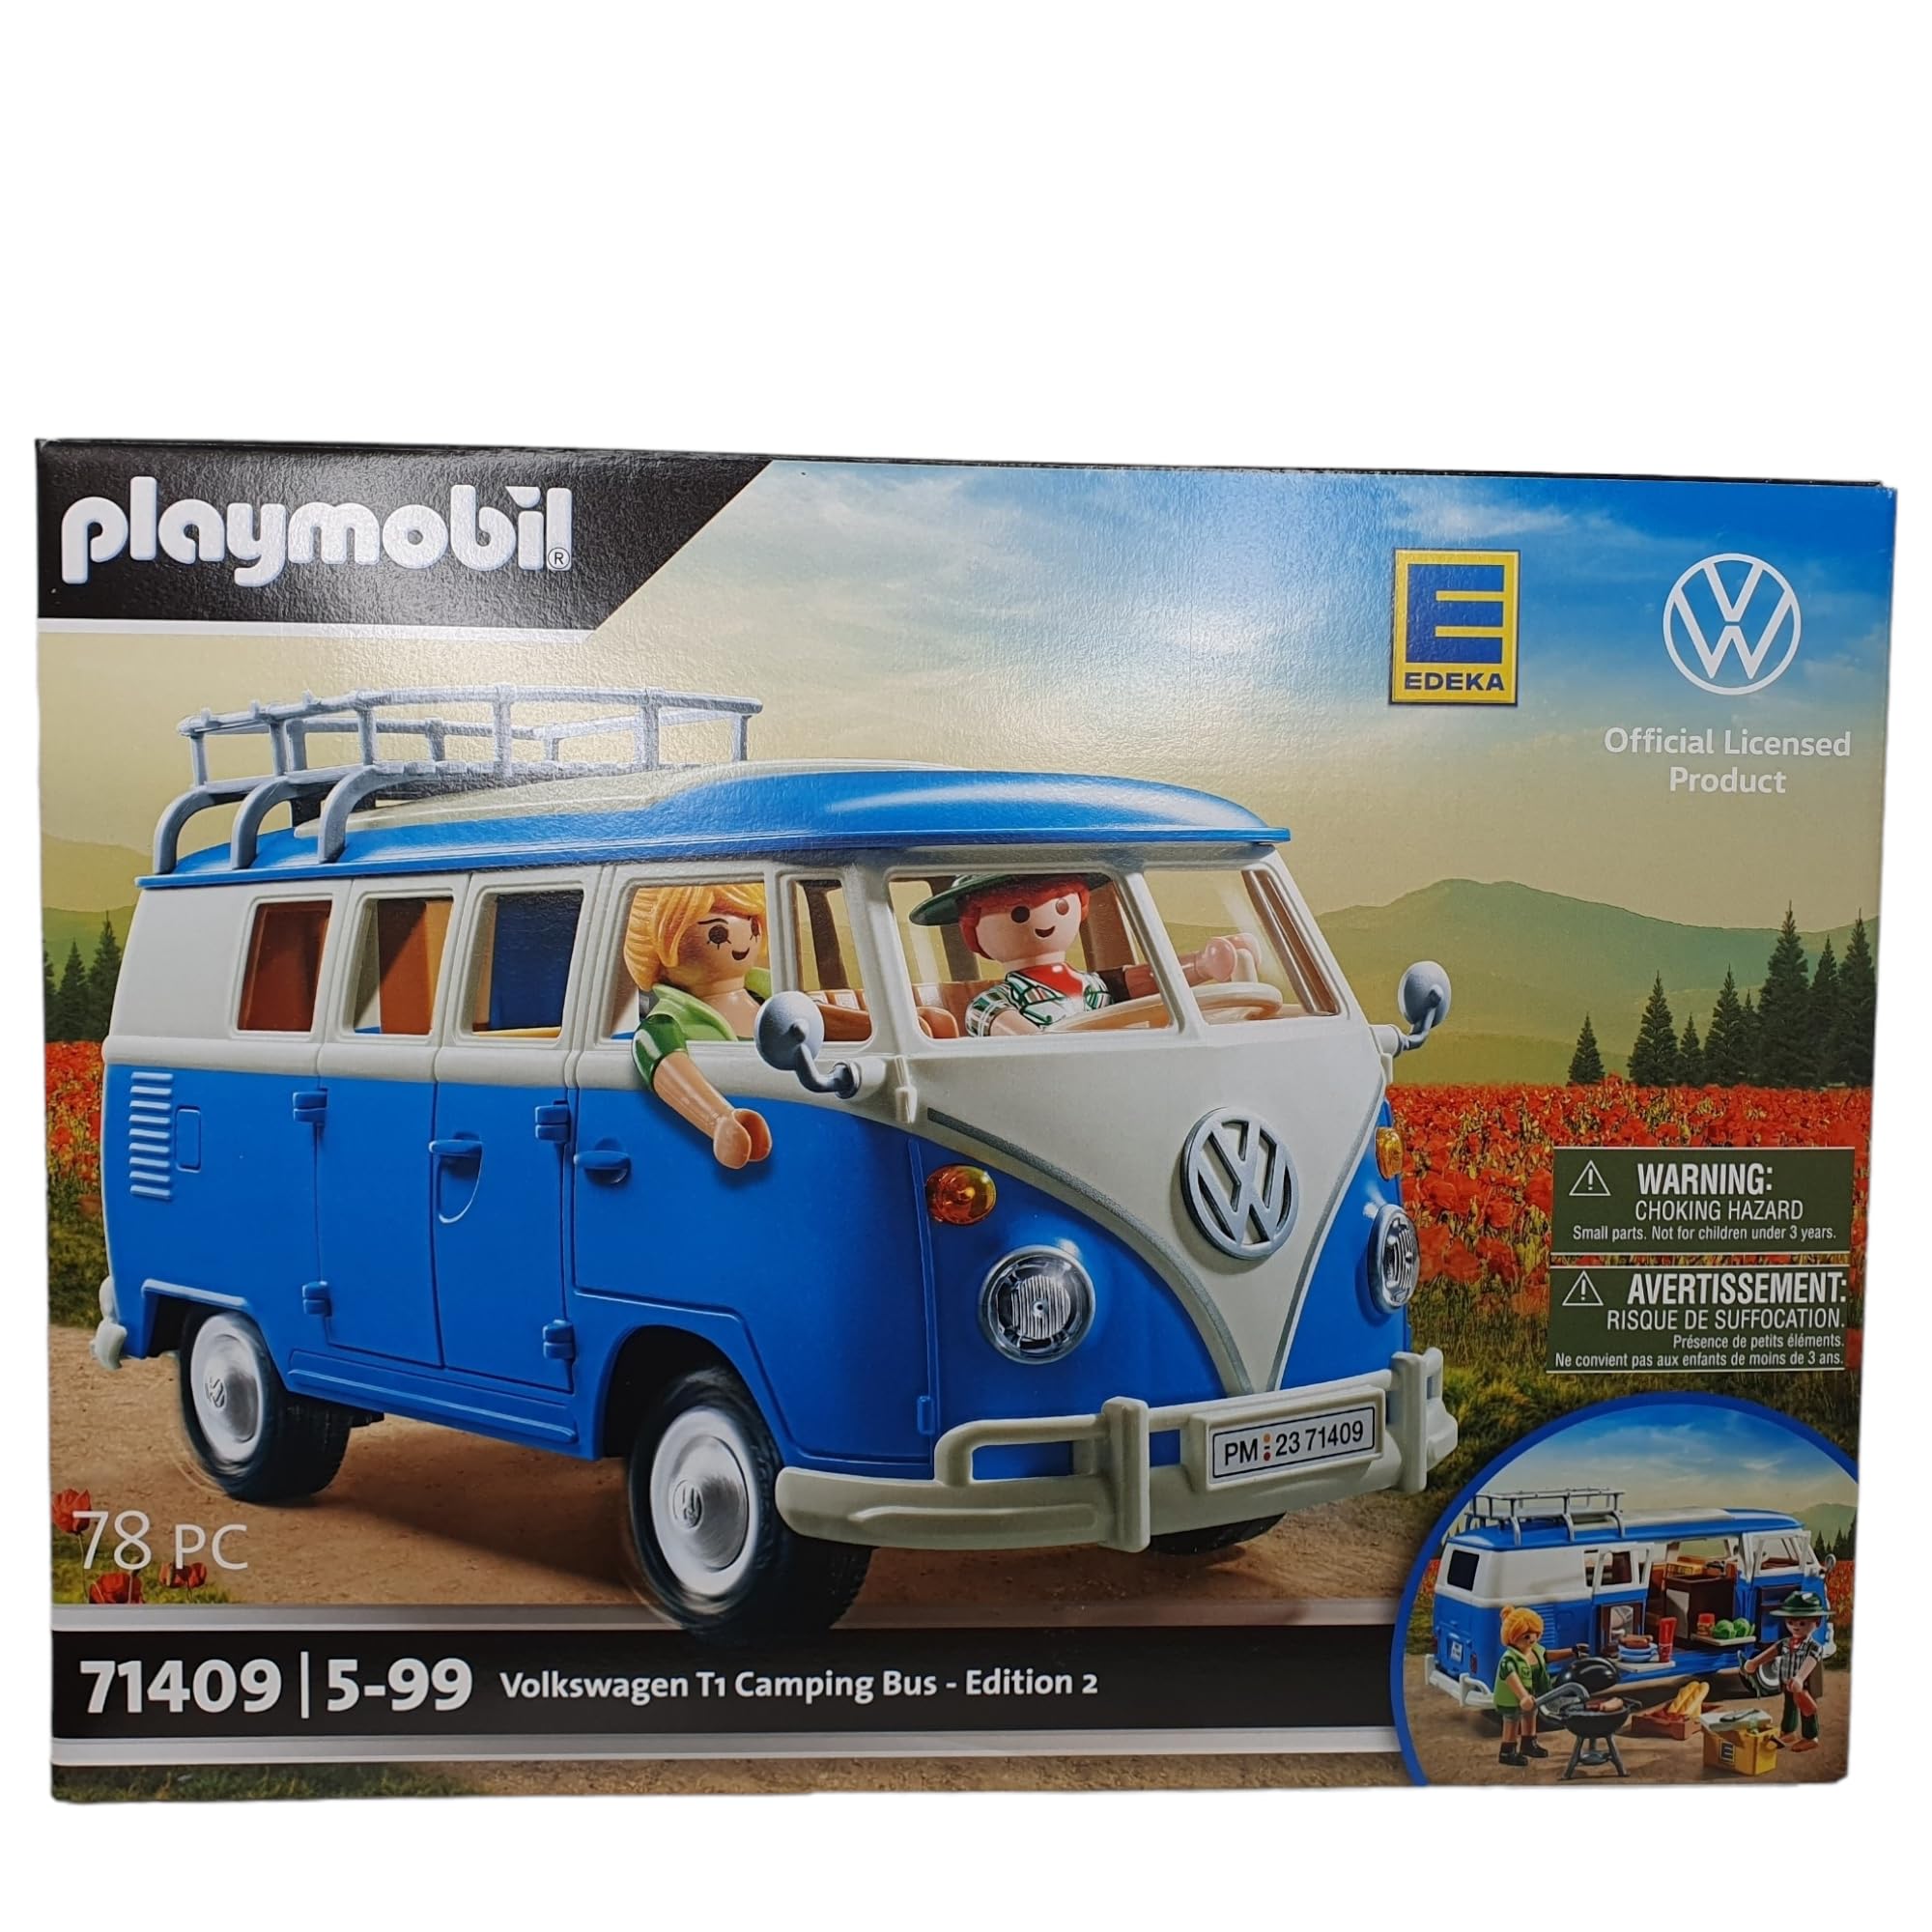 PLAYMOBIL Volkswagen 71409 T1 Camping Bus Edeka Edition 2, Für Kinder ab 5 Jahren